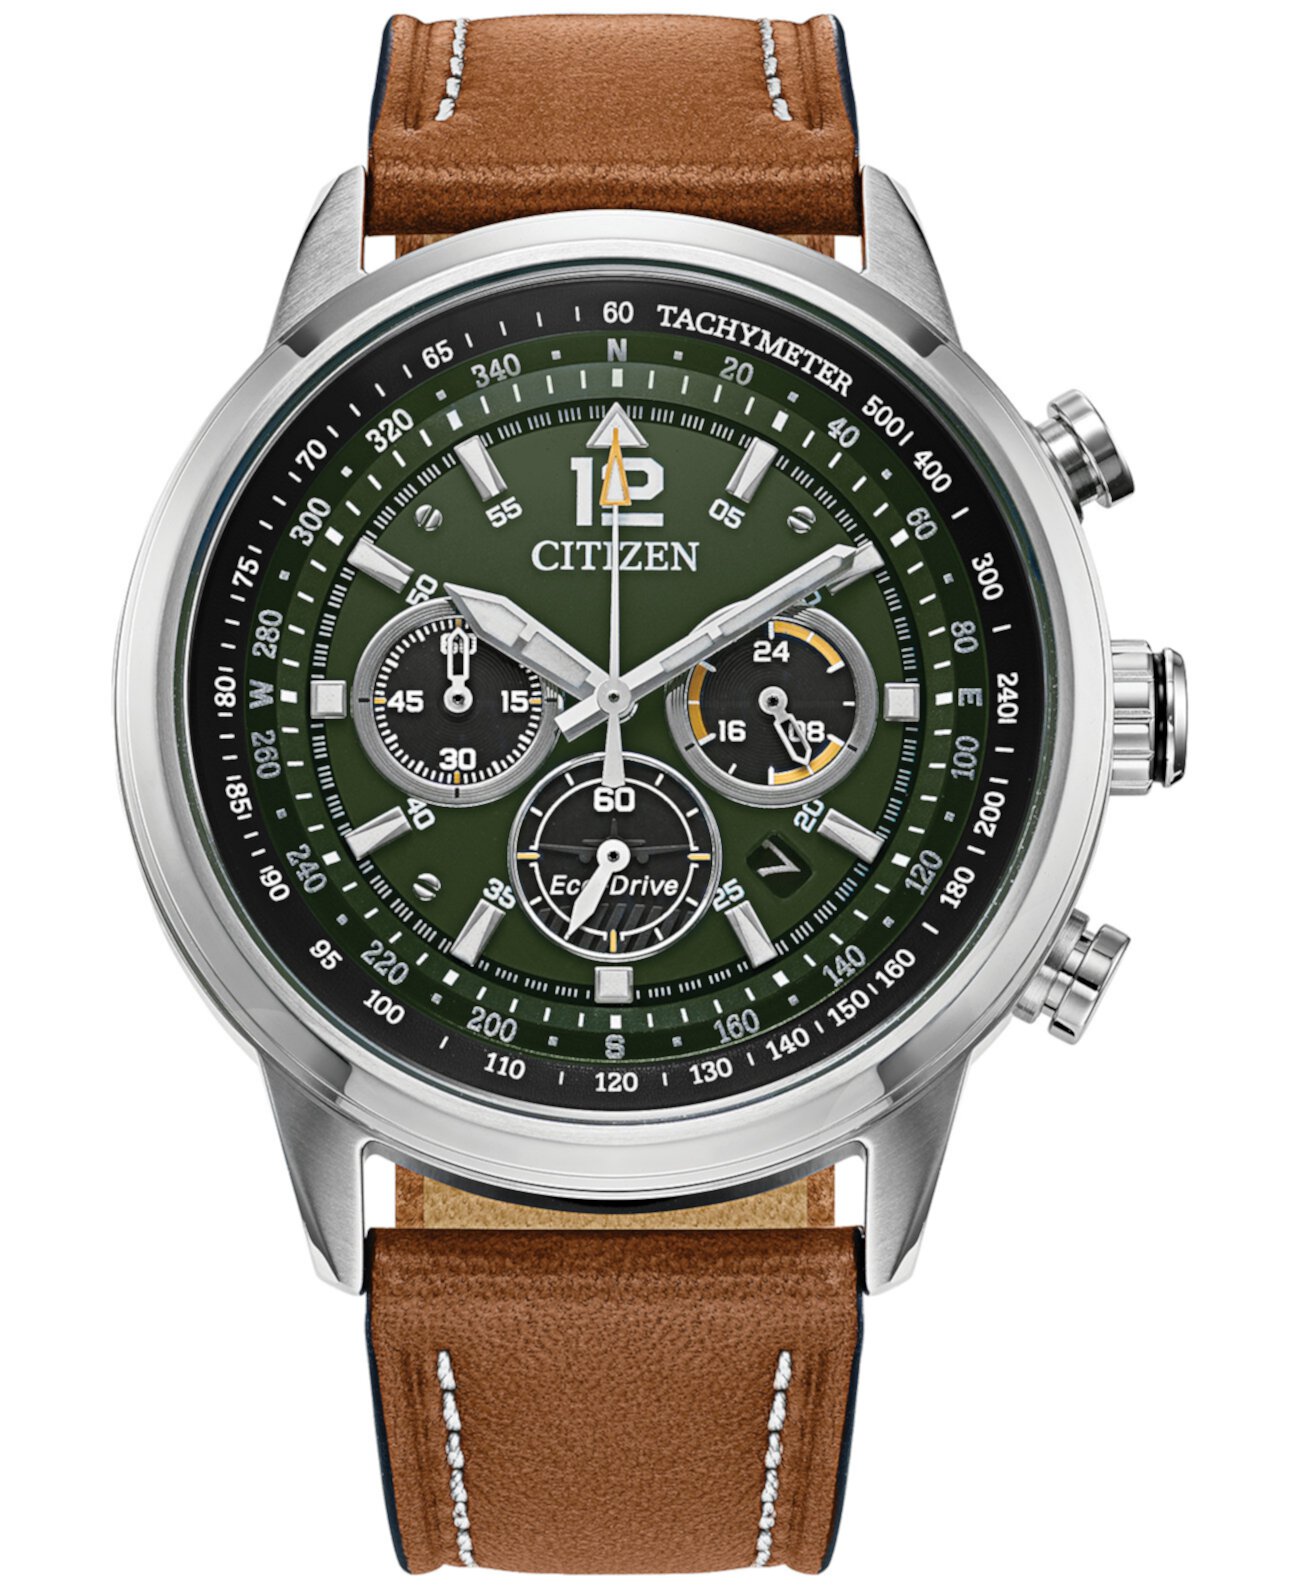 Мужские часы Eco-Drive с хронографом Avion с коричневым кожаным ремешком 44 мм Citizen